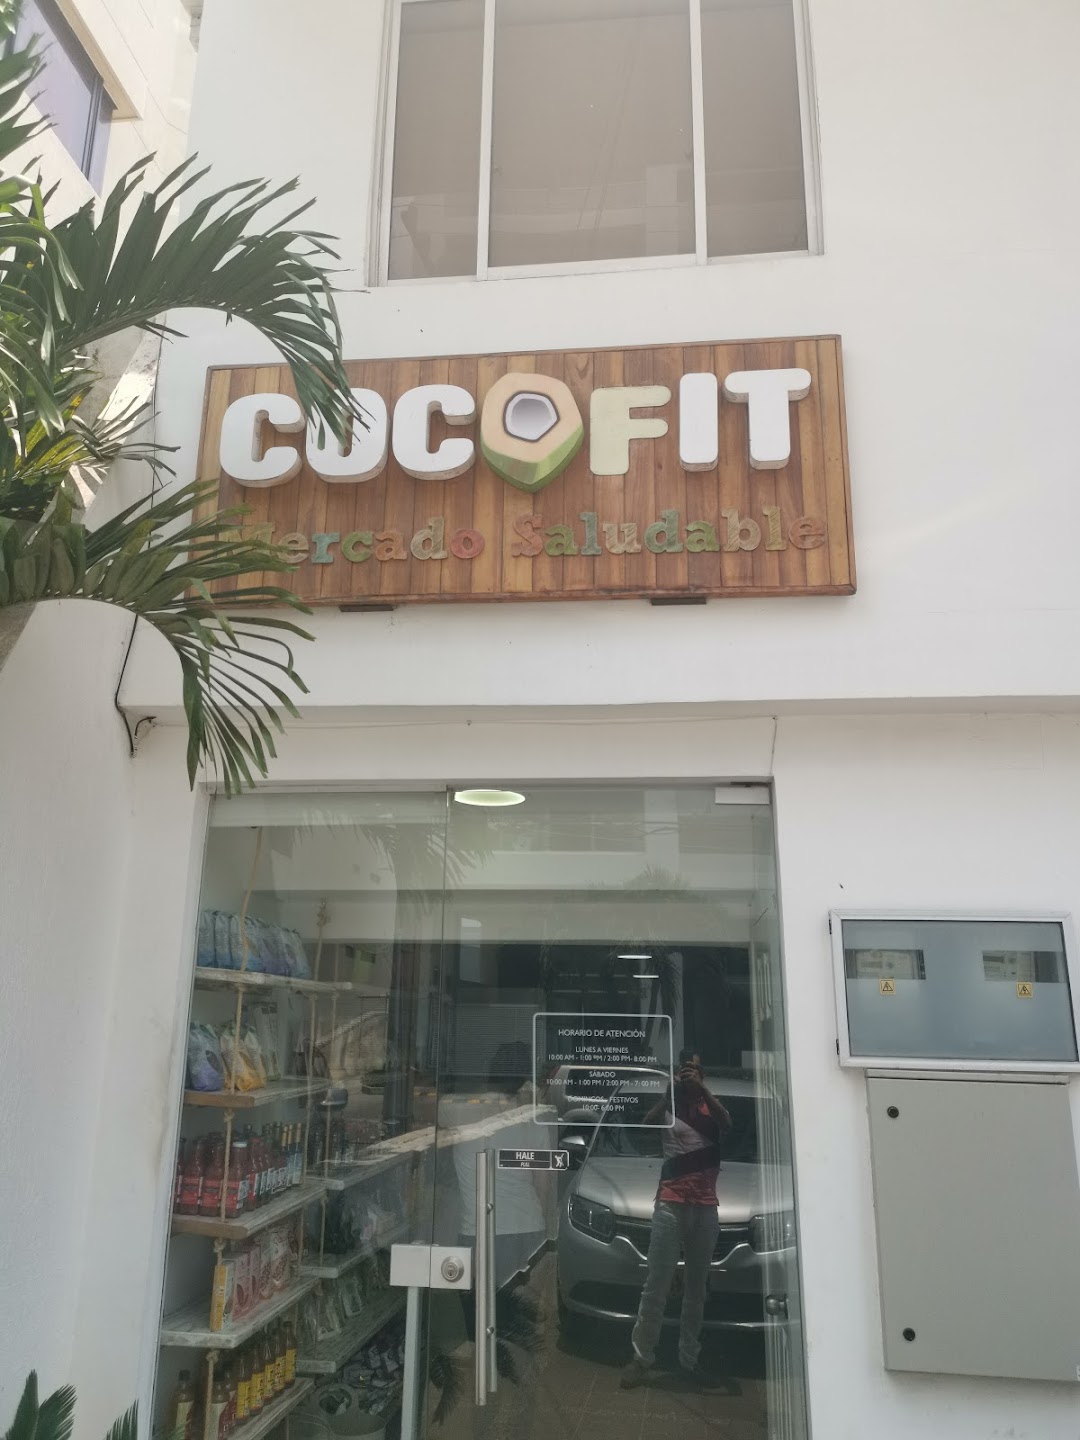 Cocofit Mercado Saludable